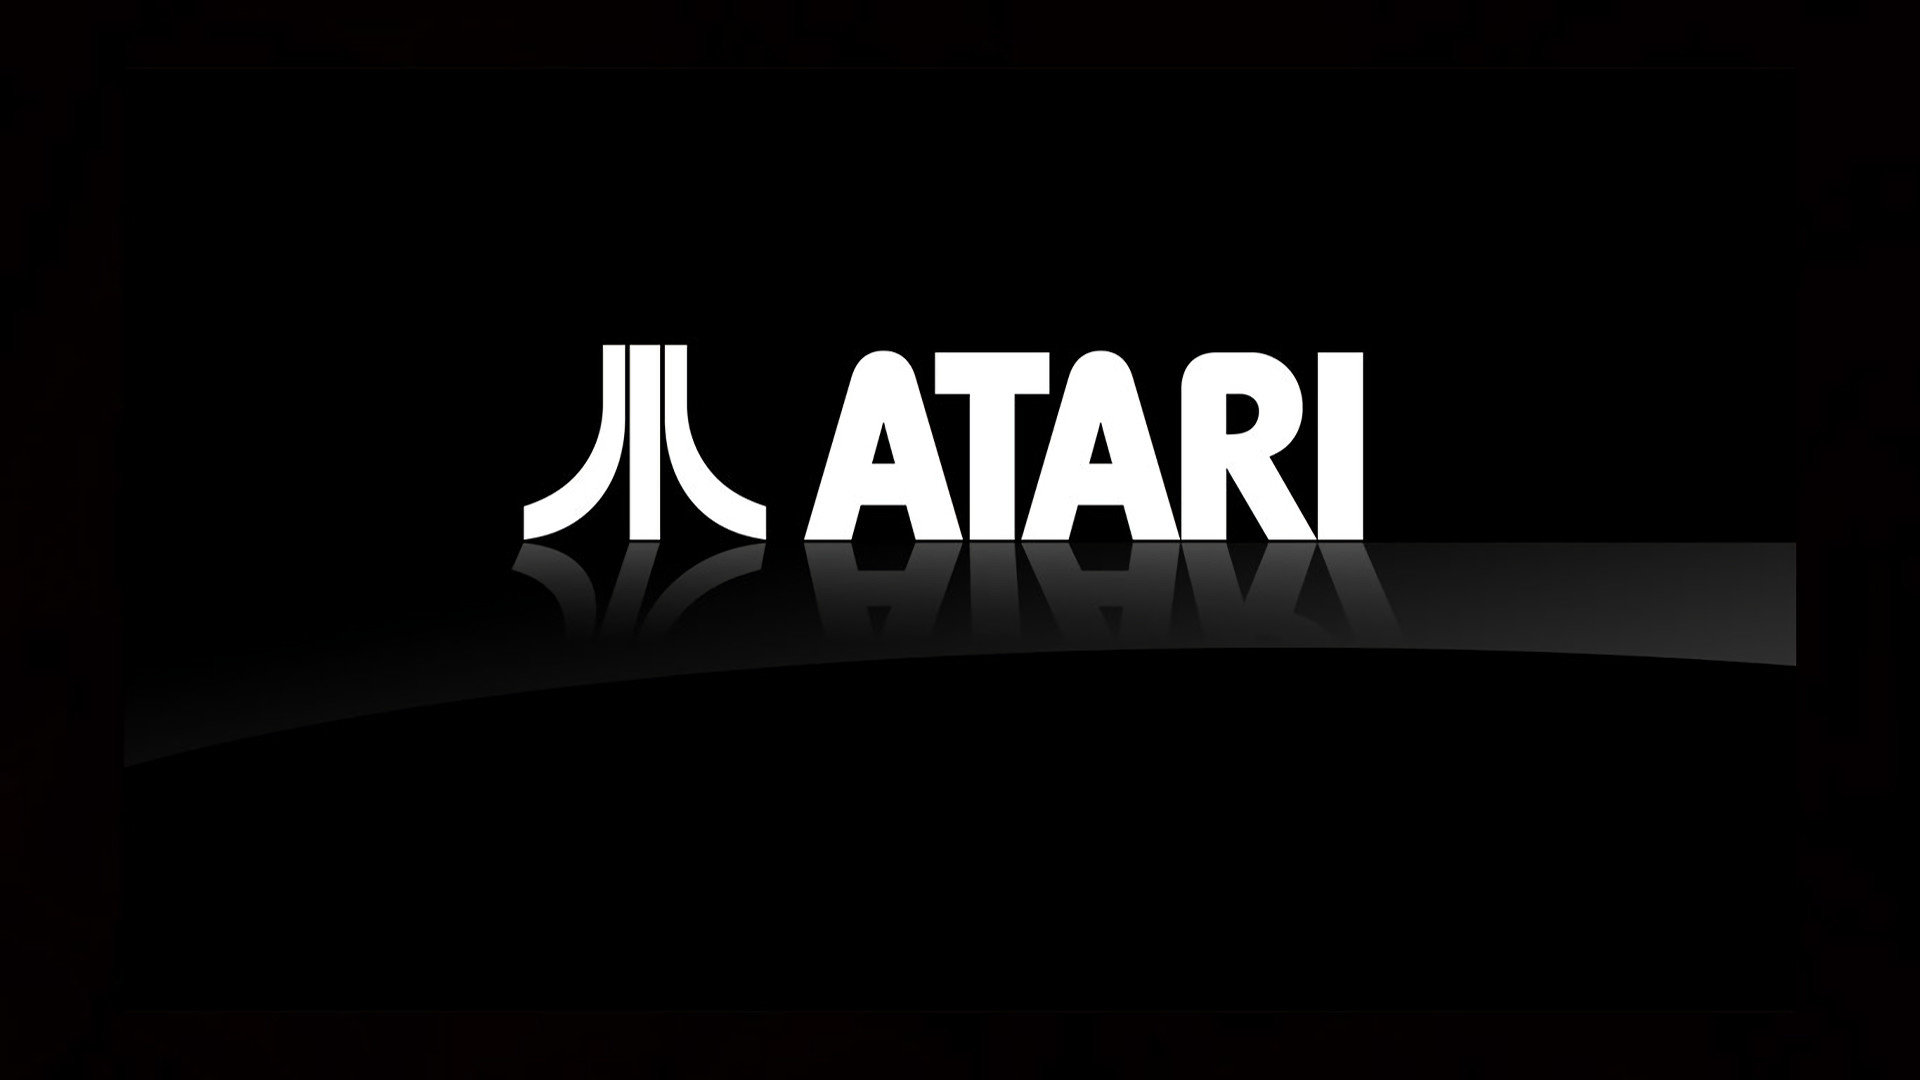 شرکت آتاری به دنبال ساخت بازی های جدید است